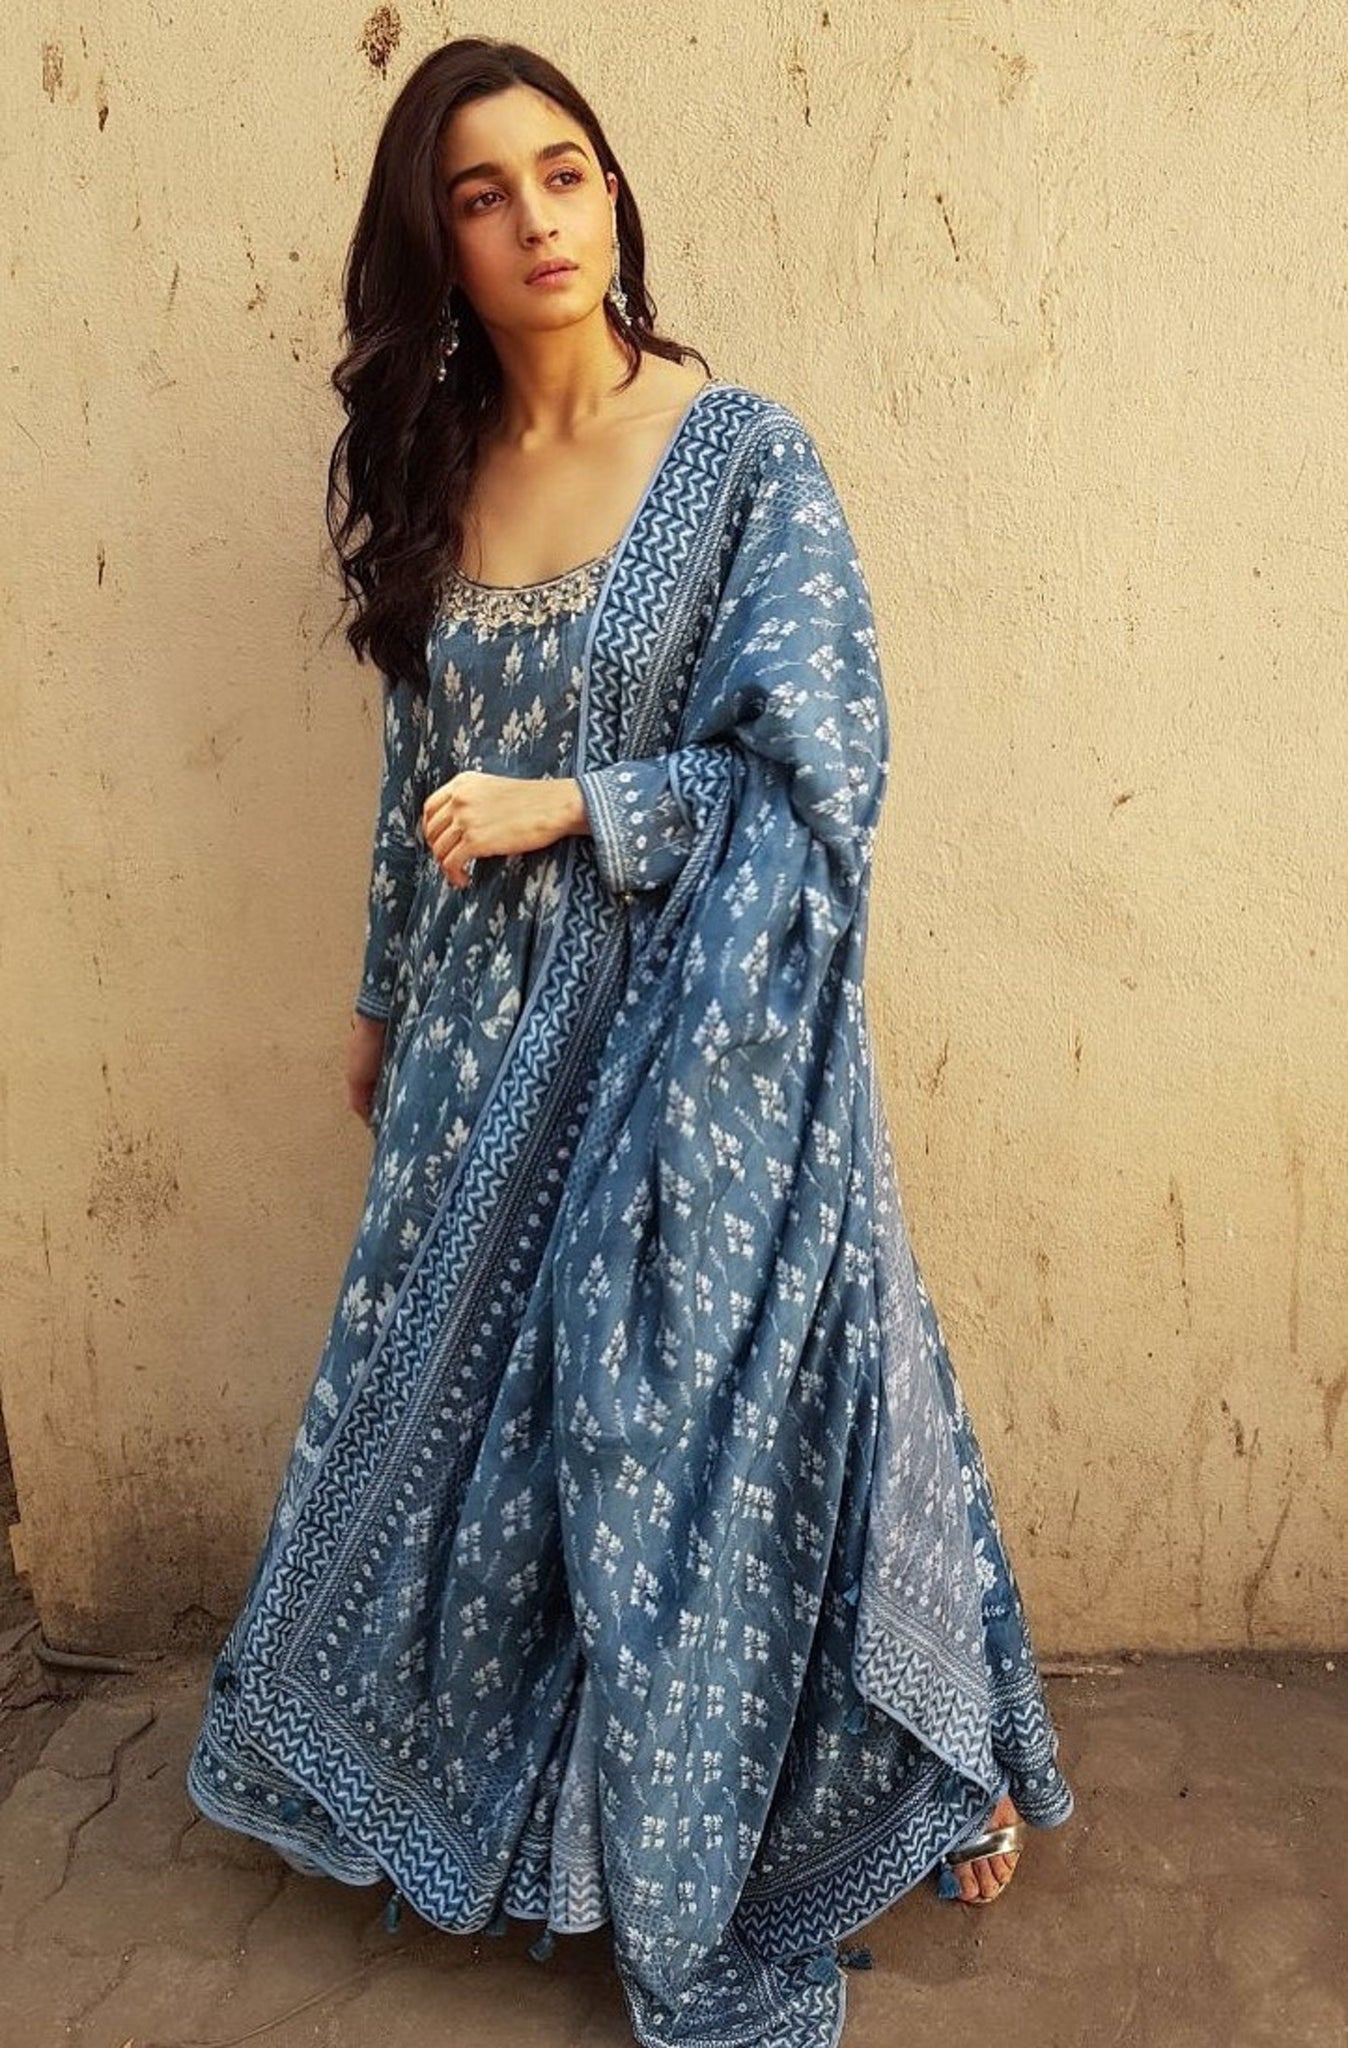 alia-bhatt-in-anita-dongre-dress